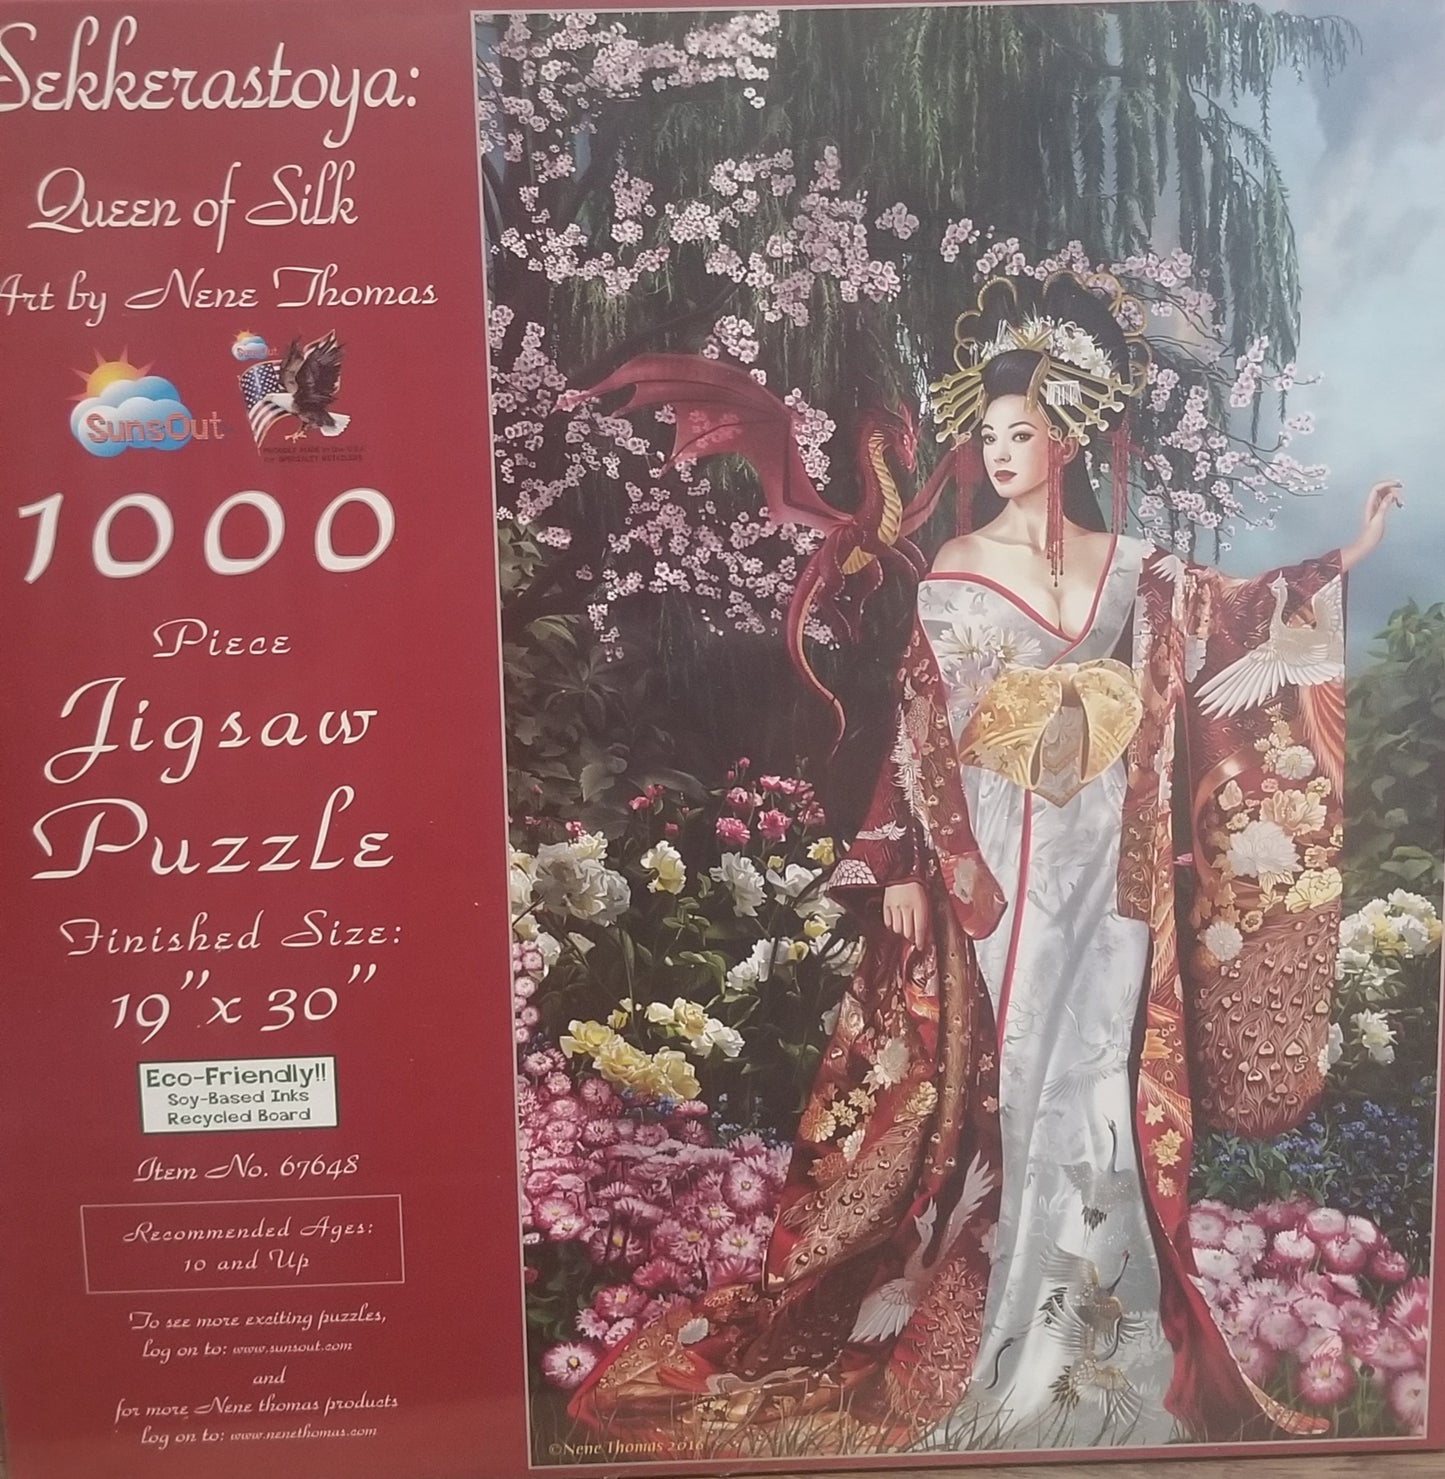 Sekkerastoya: Queen of Silk by Nene Thomas, 1000 Piece Puzzle